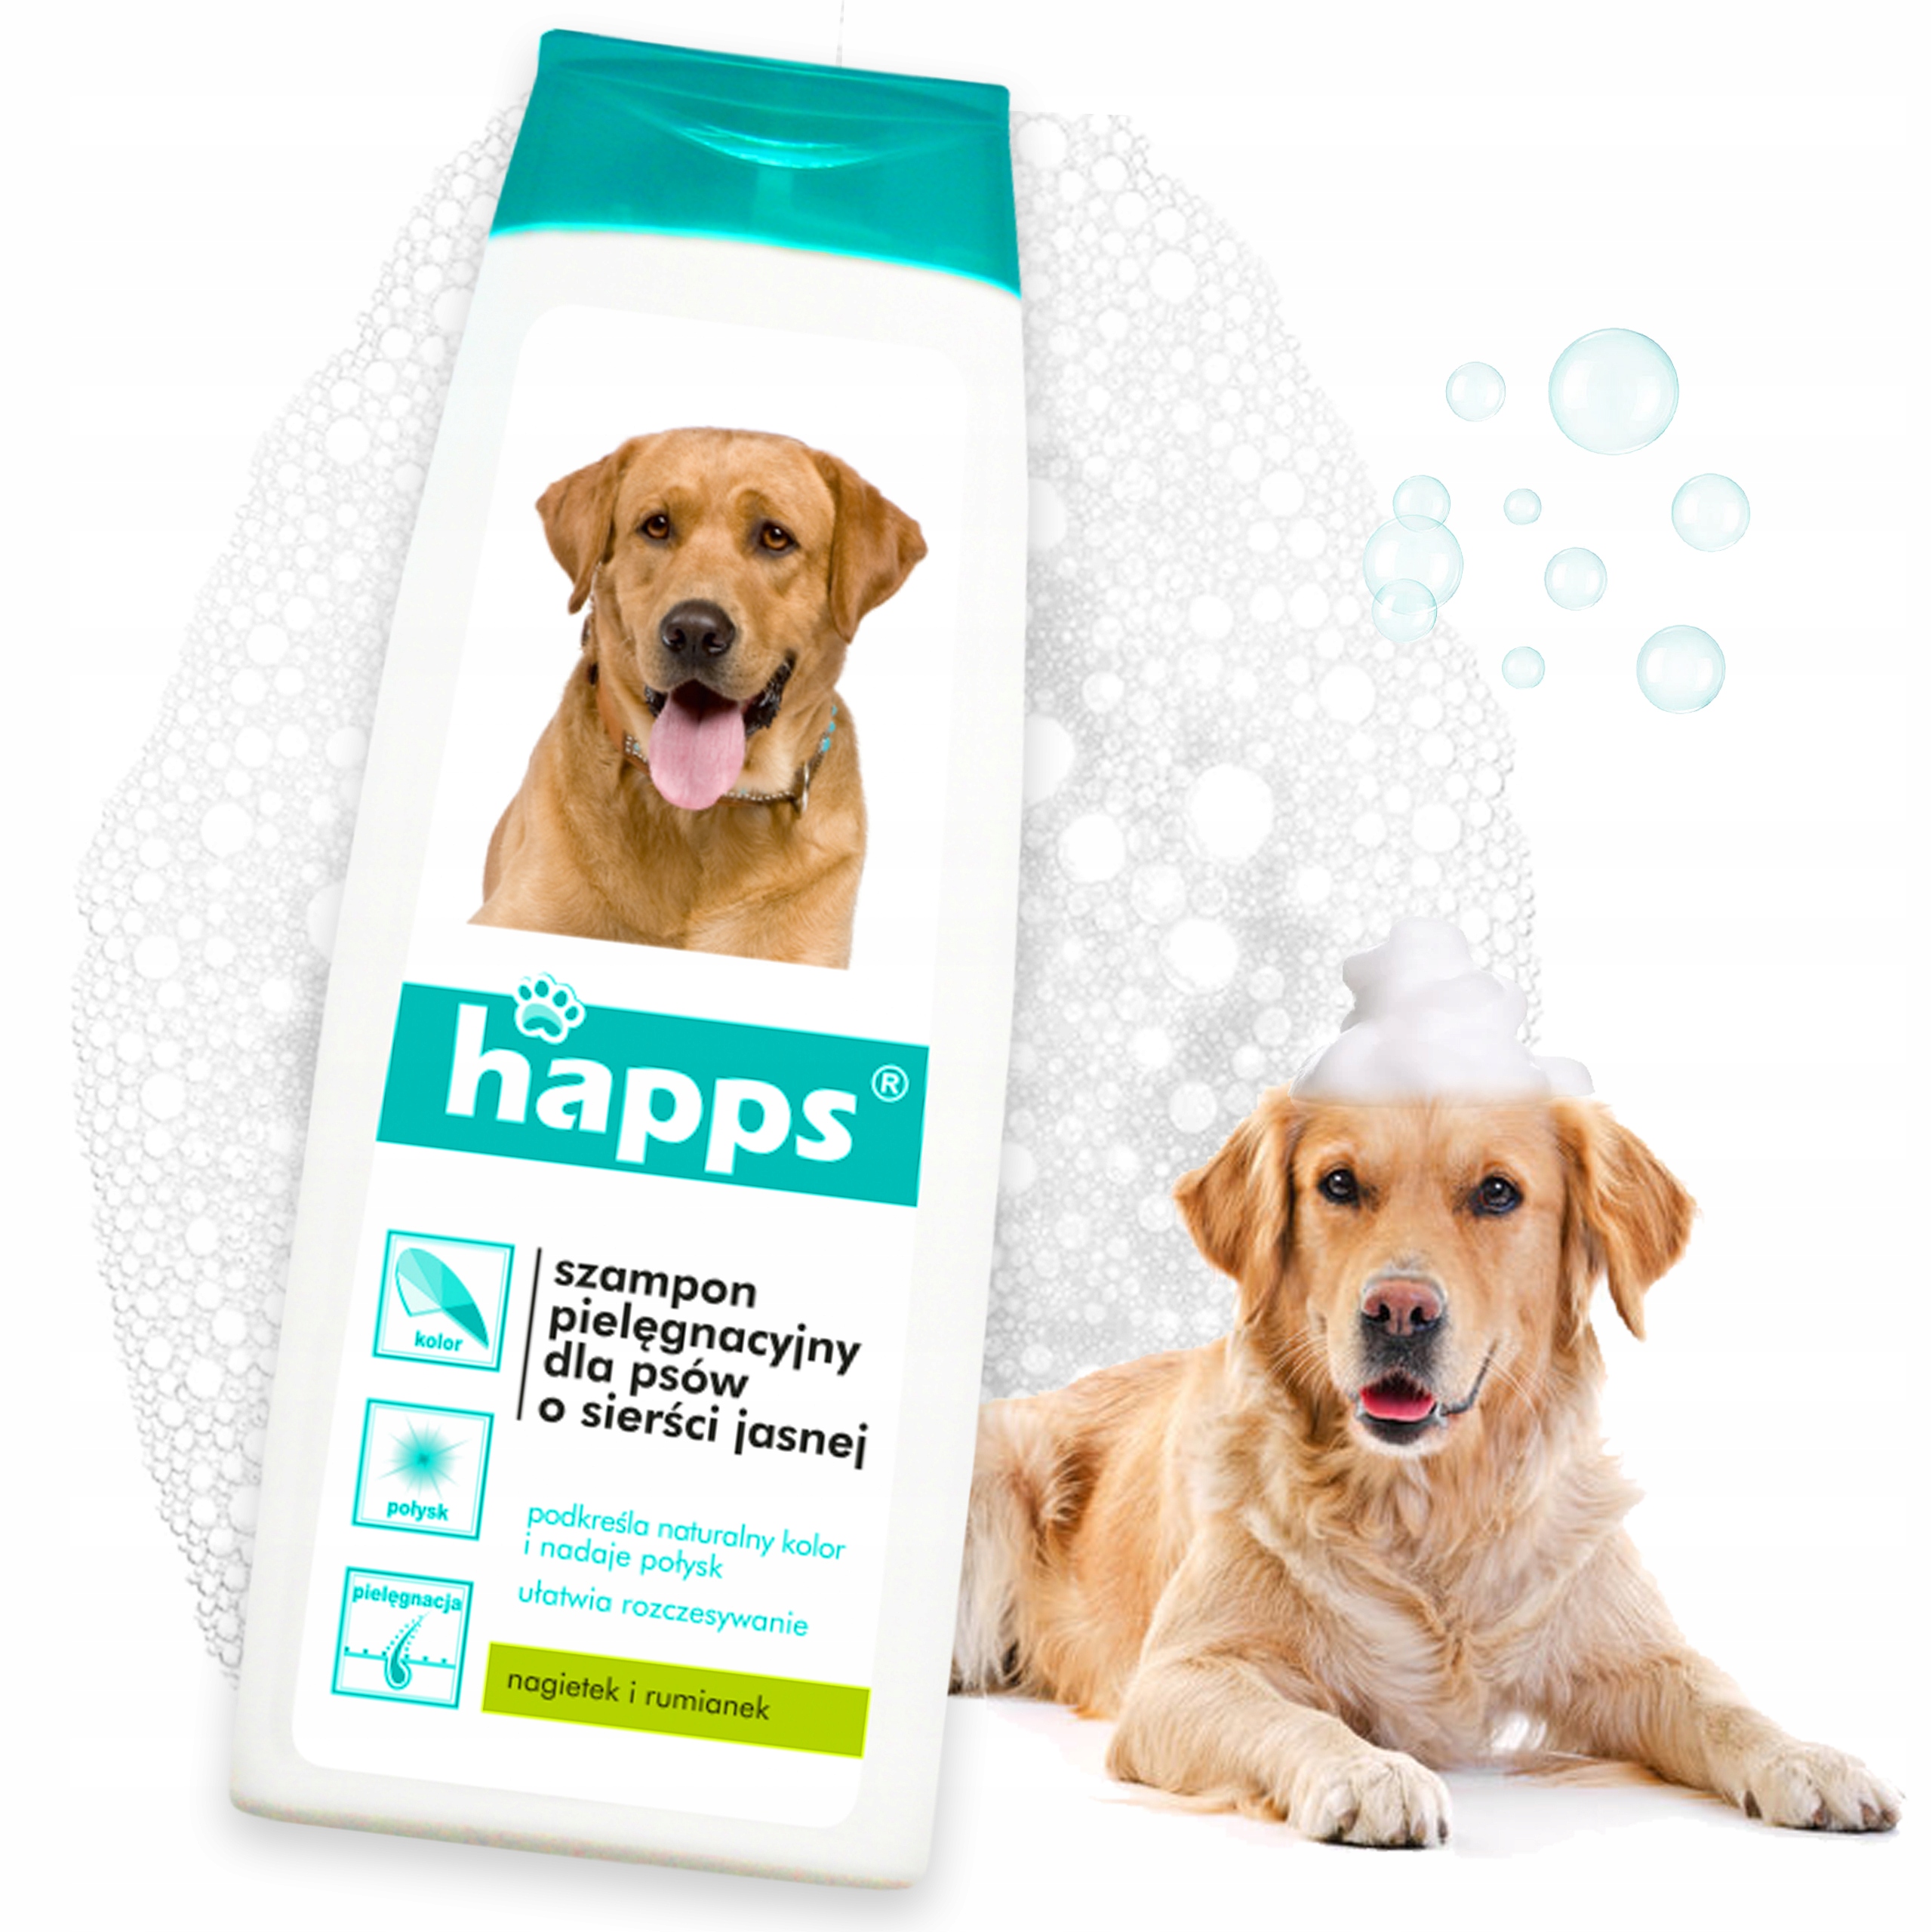 happs szampon pielęgnacyjny dla psów o jasnej sierści opinie